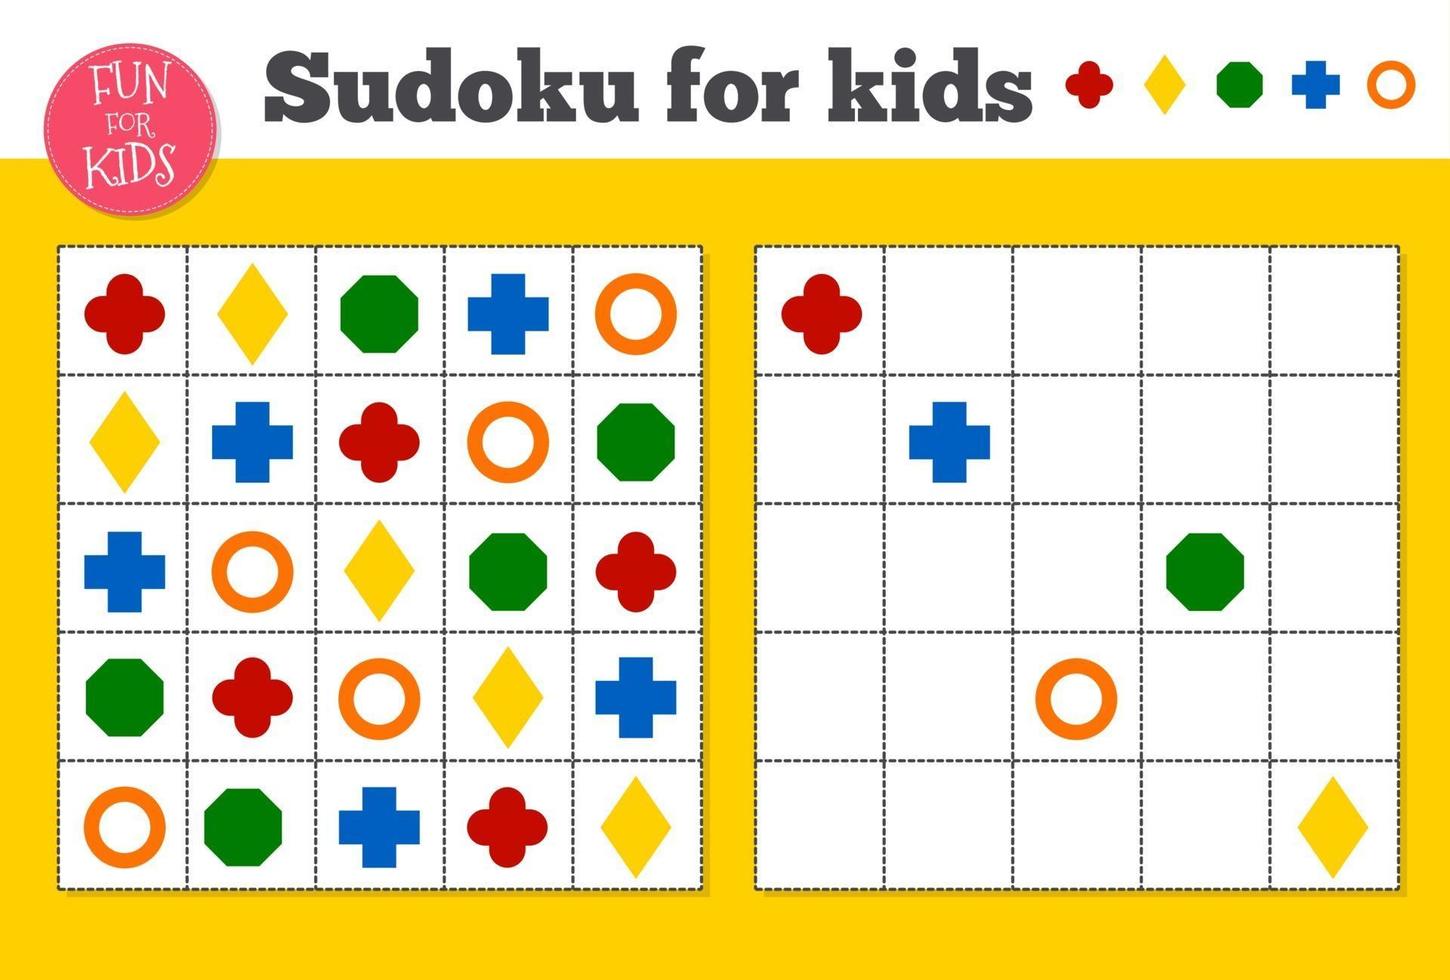 sudoku. mosaico matematico per bambini e adulti. quadrato magico. gioco di puzzle di logica. vettore